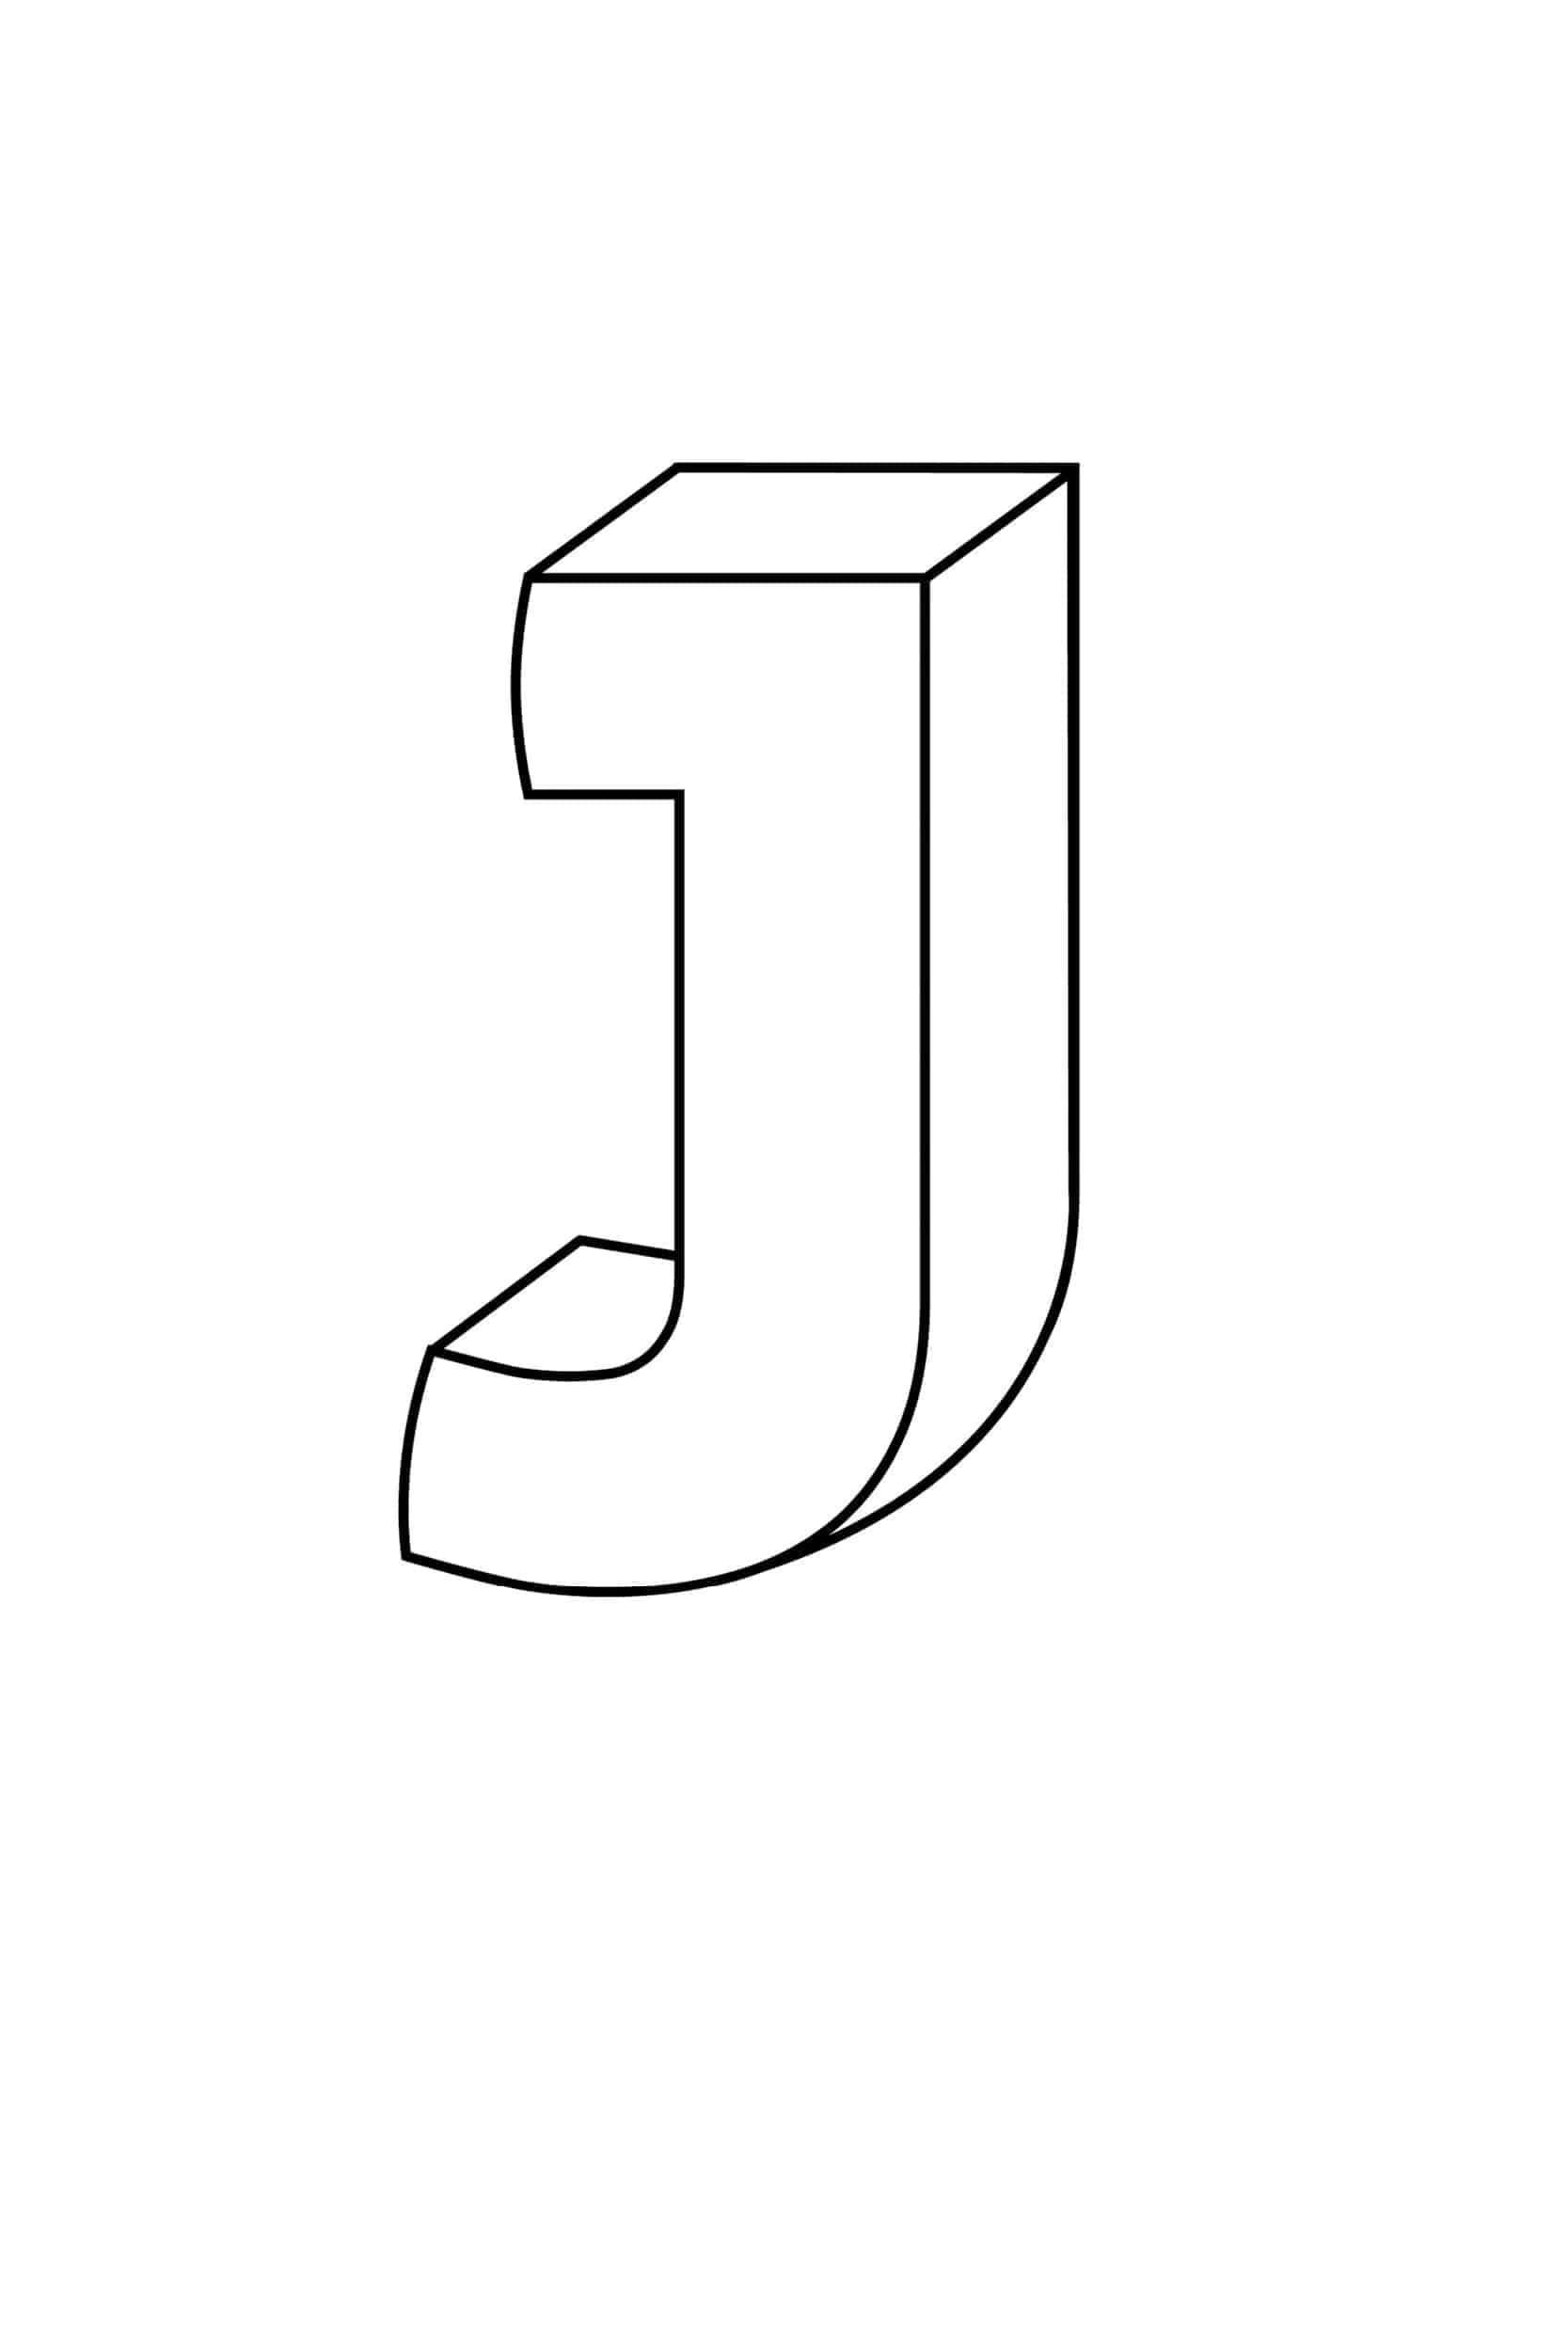 Printable Bubble Letters Alphabet J_32978